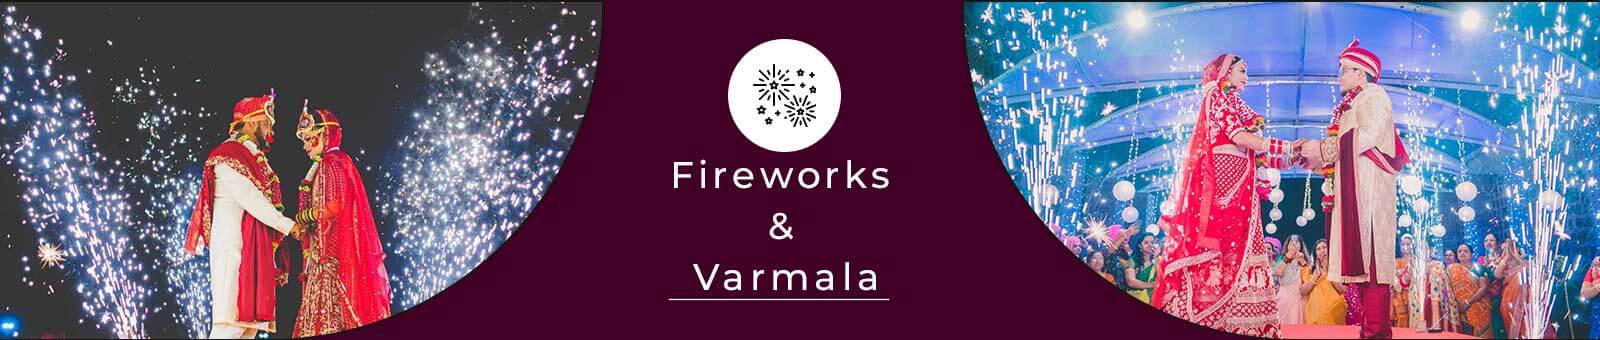 Varmala & Fireworks Services in Delhi